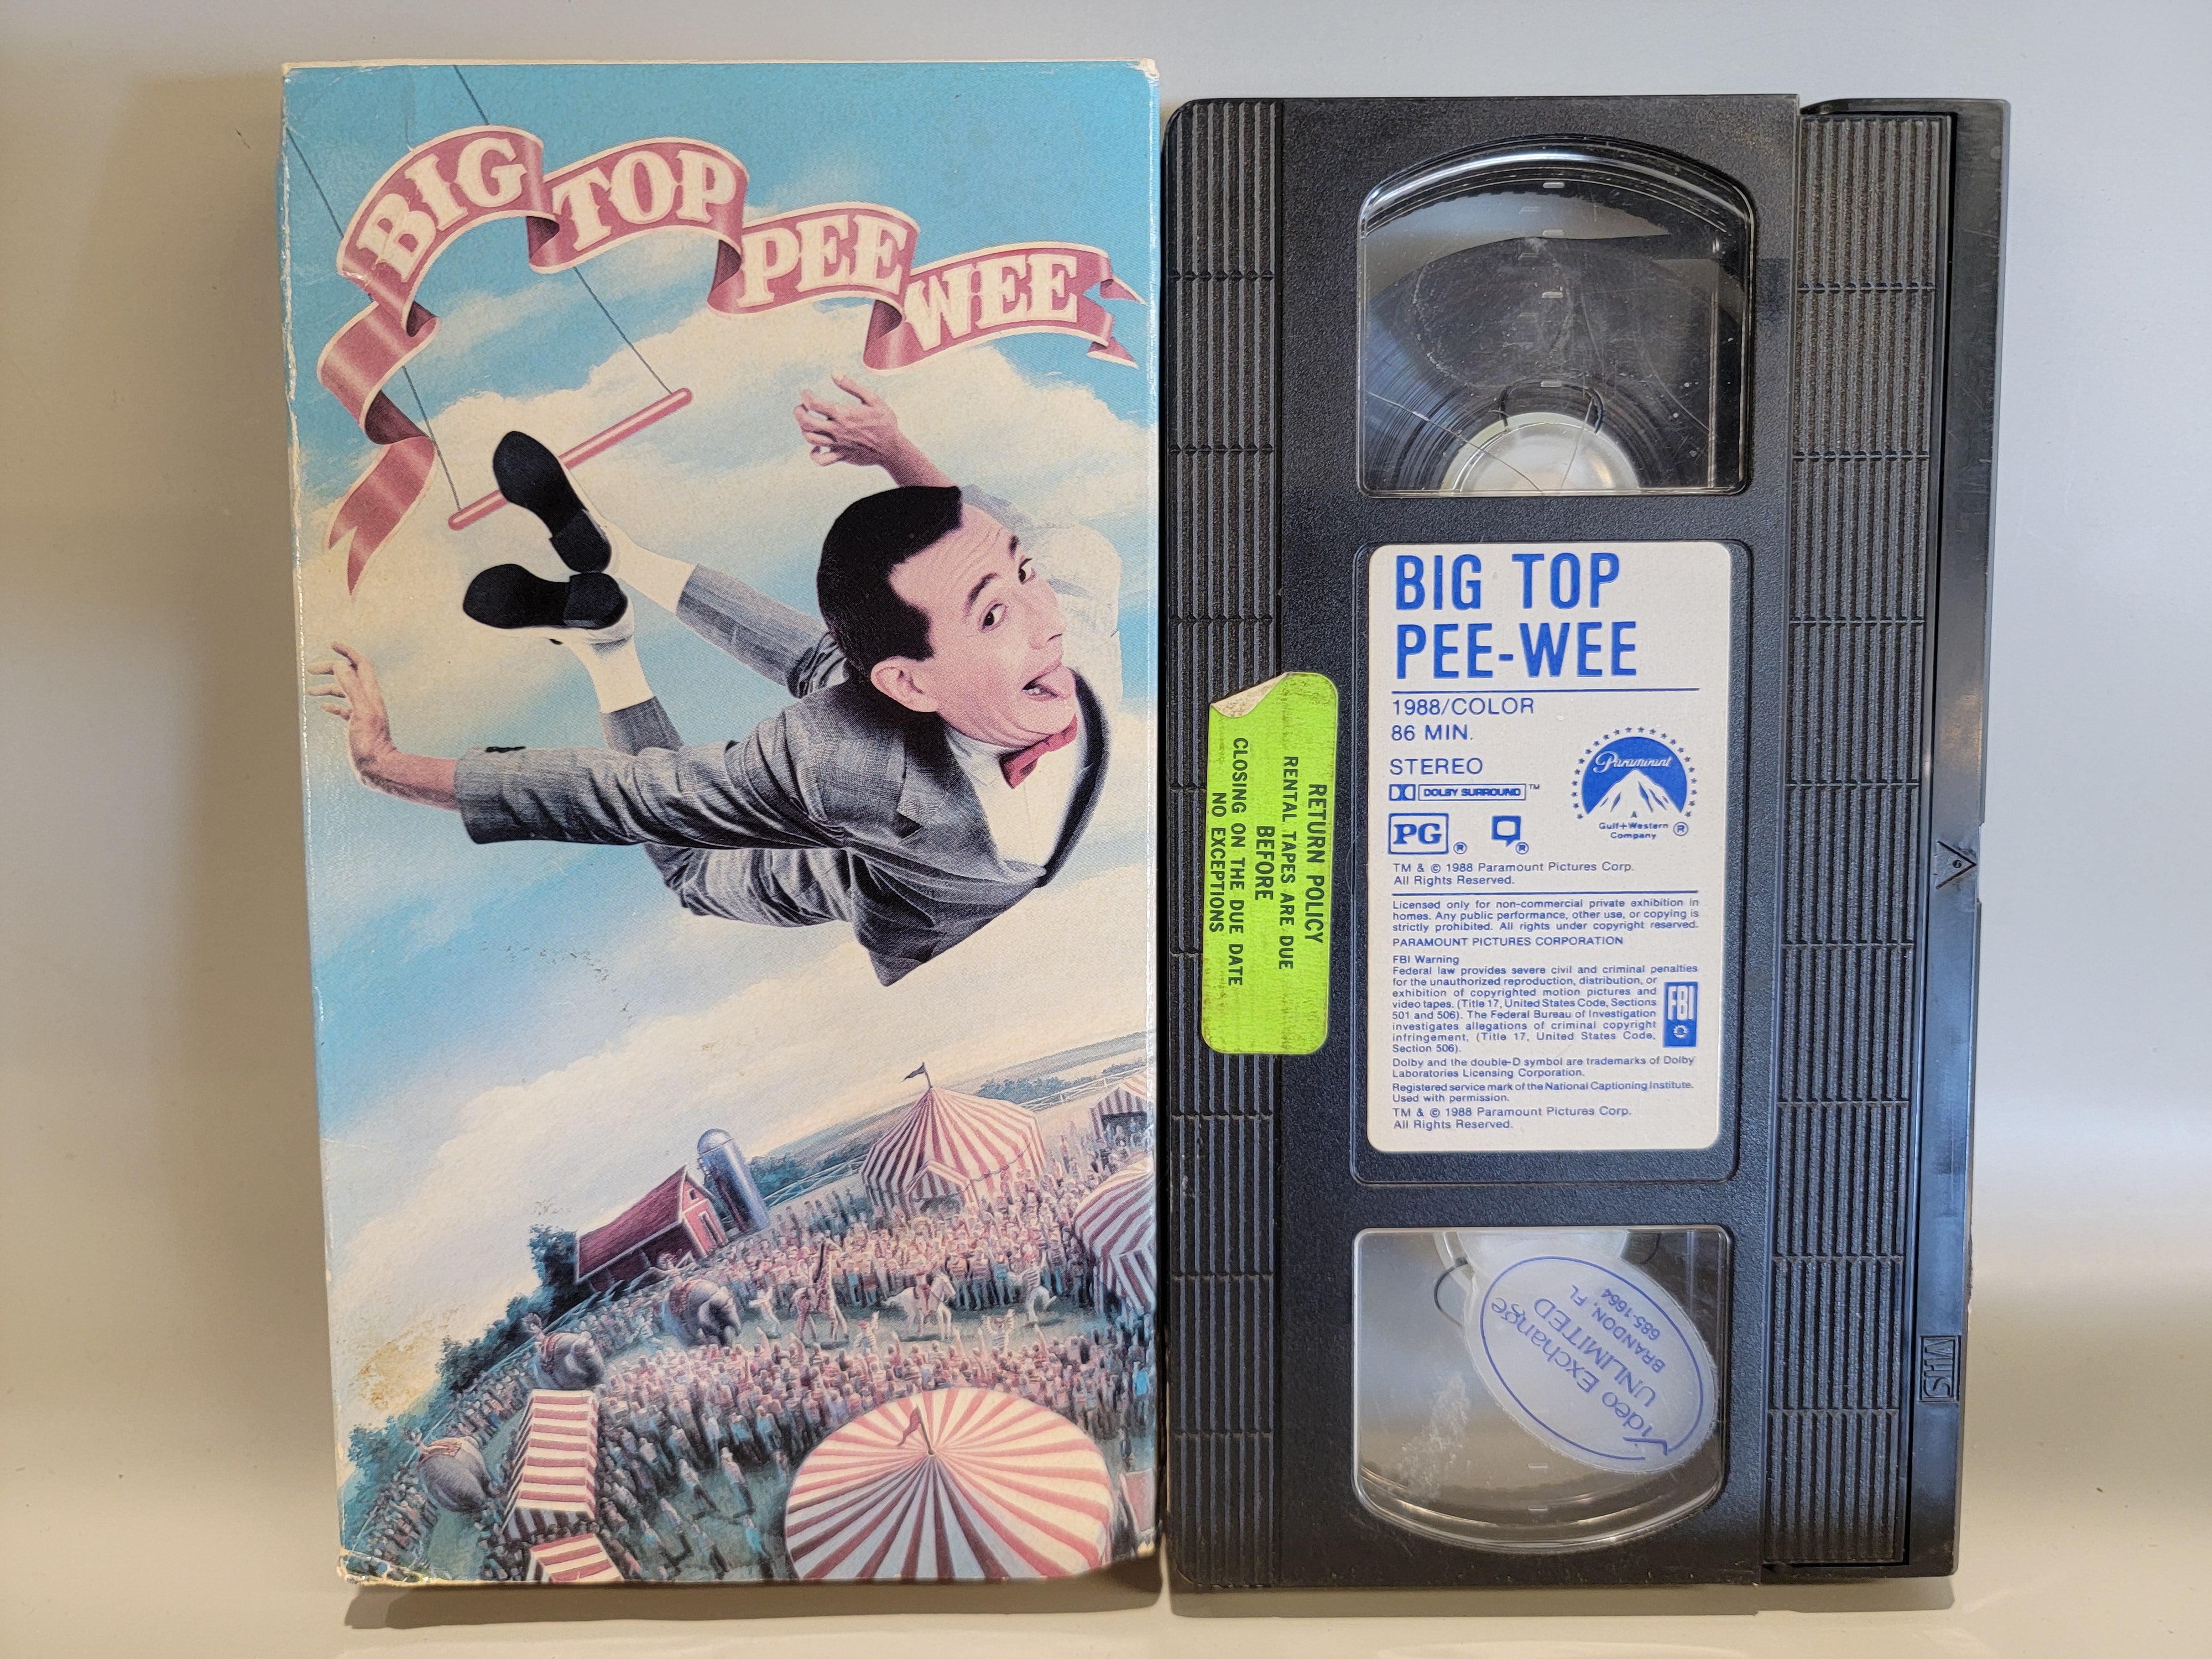 BIG TOP PEE-WEE VHS [USED]